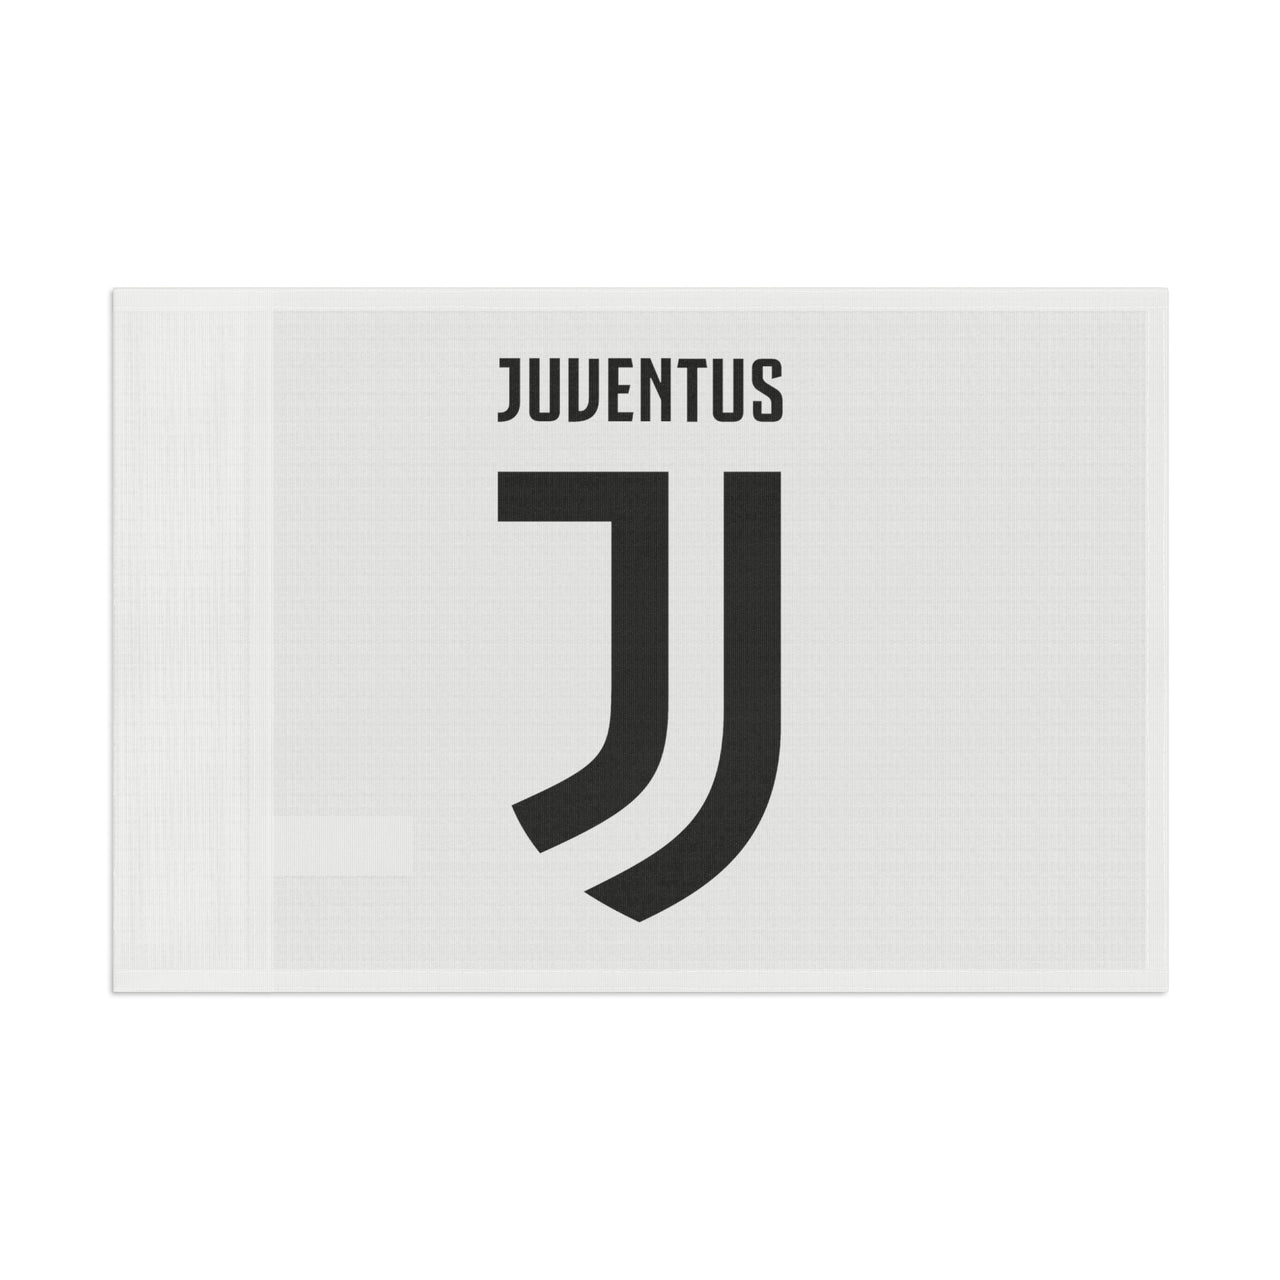 Juventus Flag